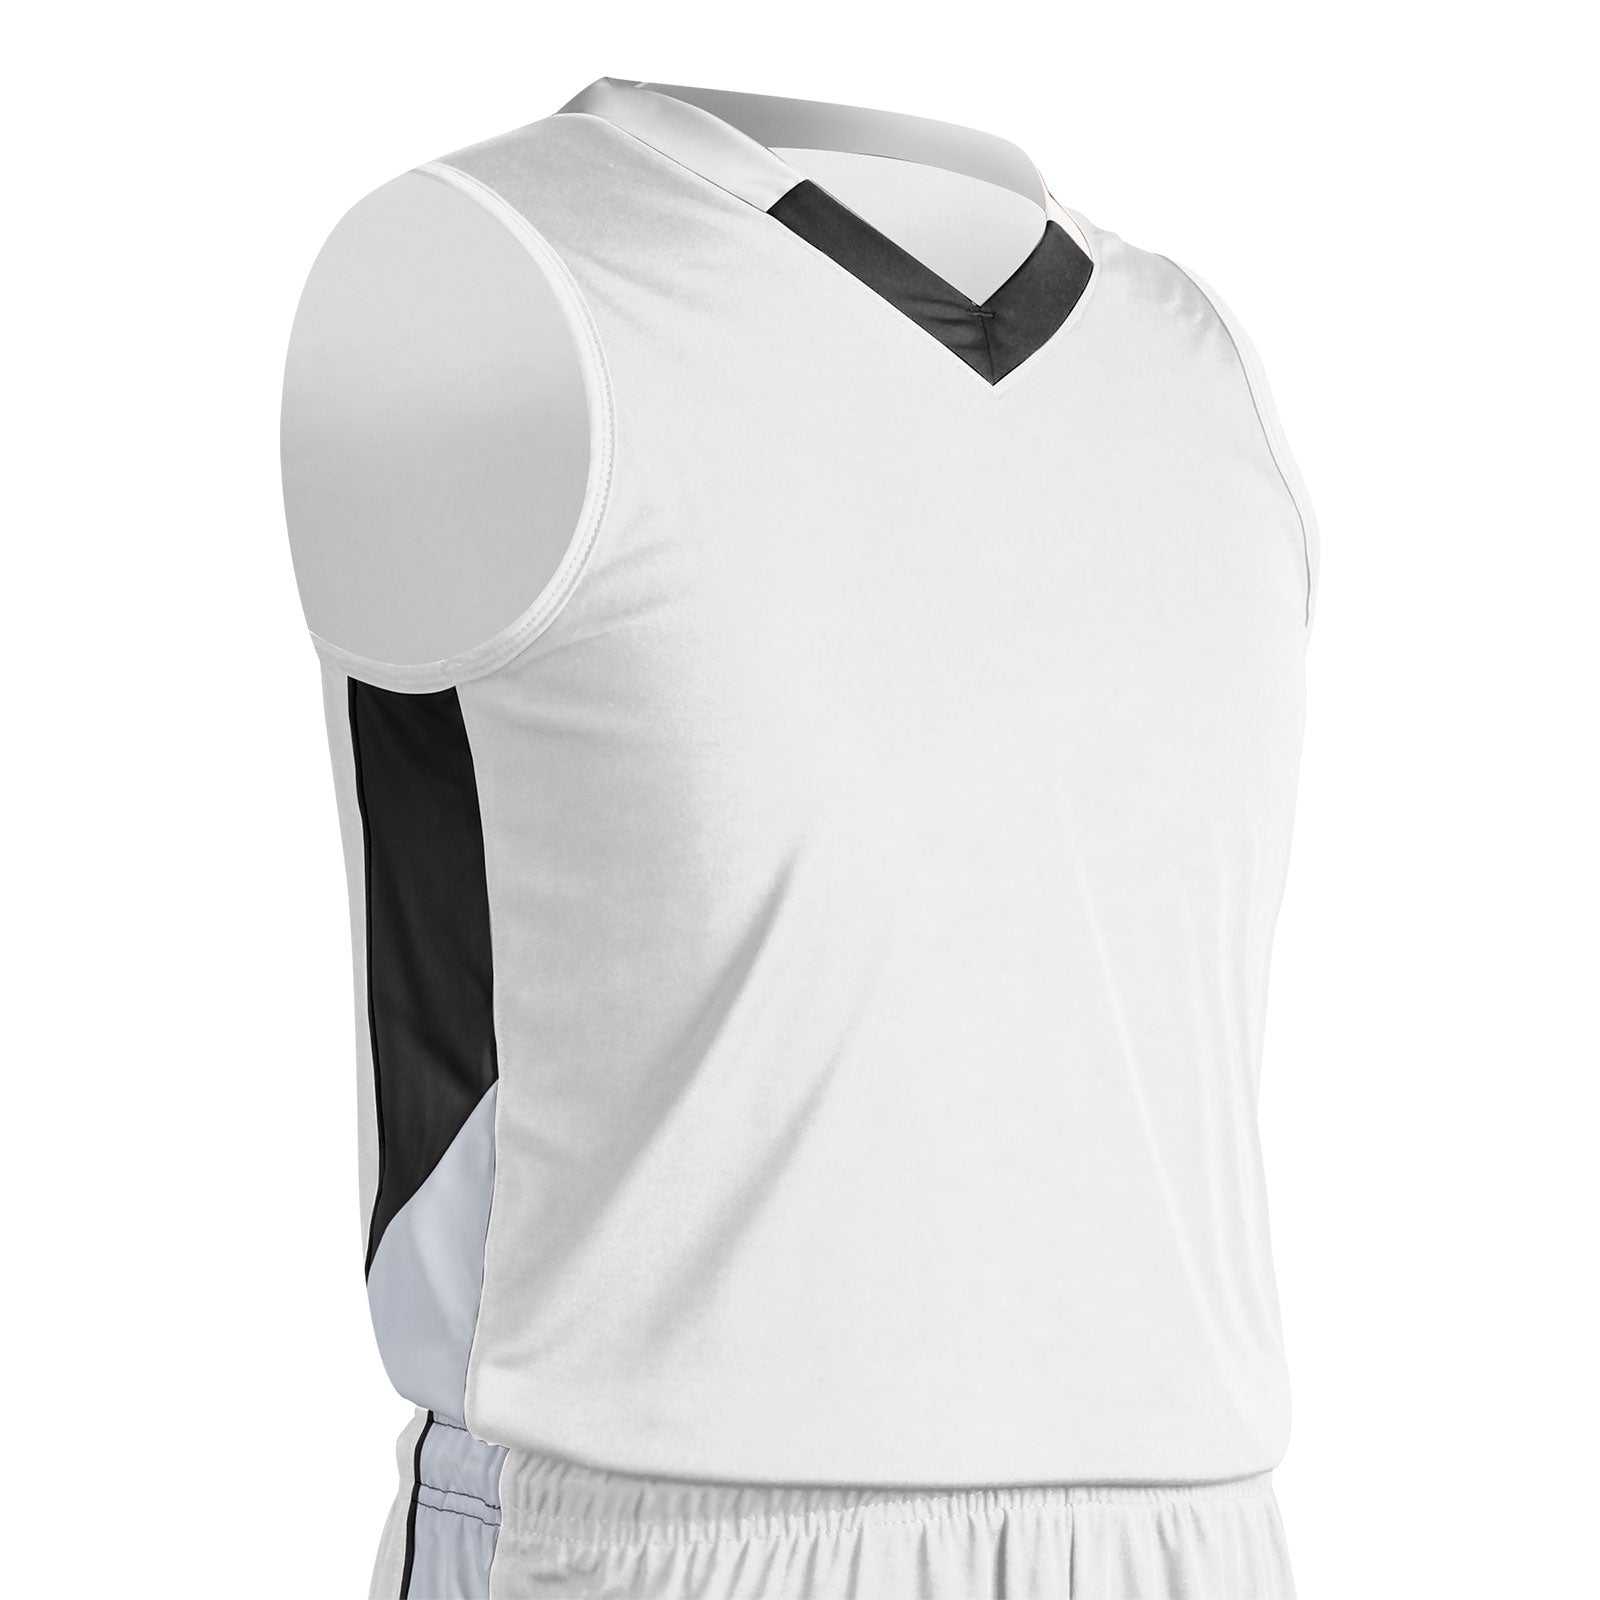 Champro BBJ21 Rebel Basketball Jersey - White Black White - HIT a Double